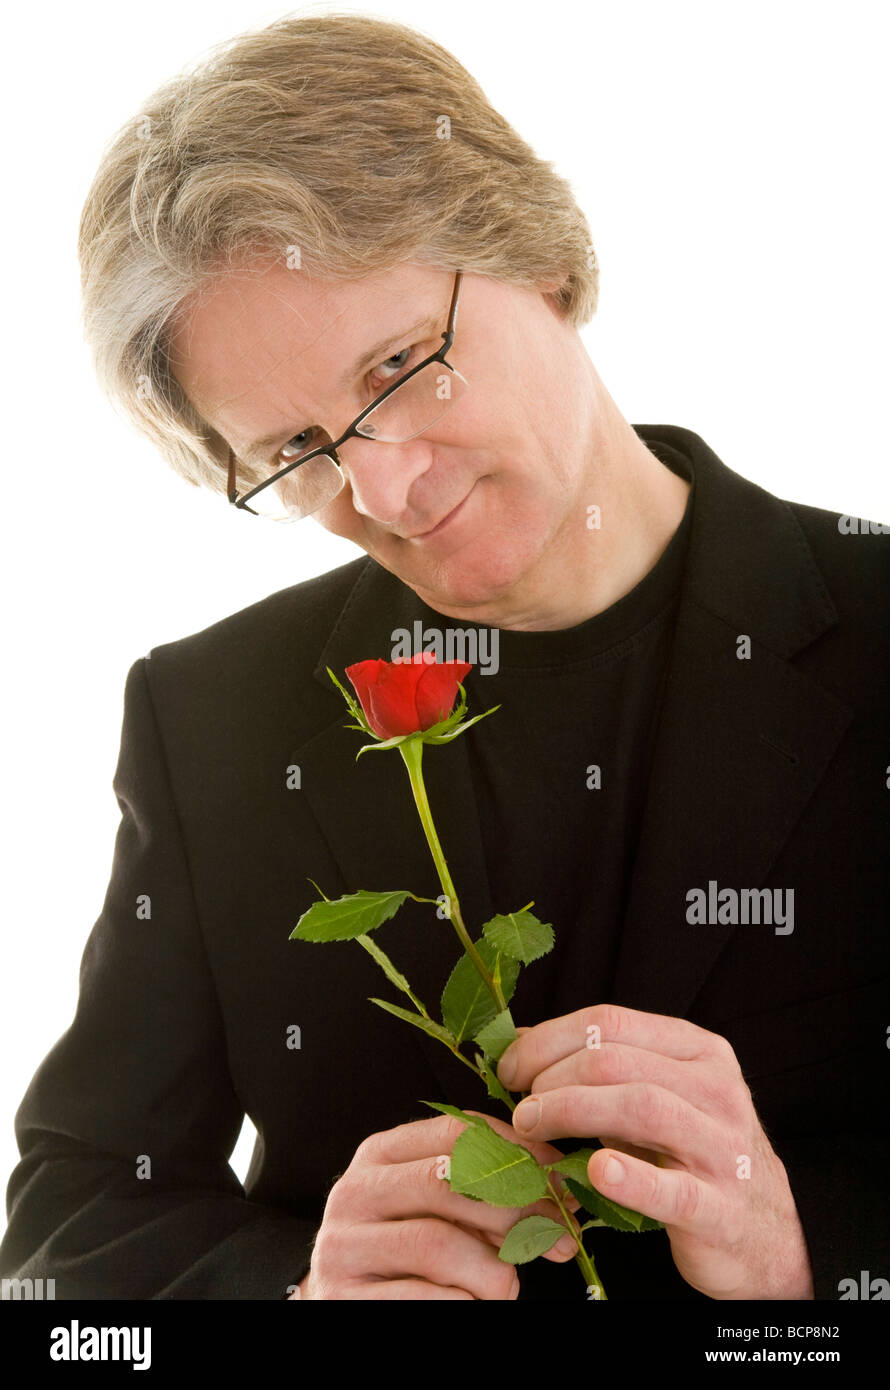 Mann hält zärtlich eine rote Rose in der Hand Stock Photo